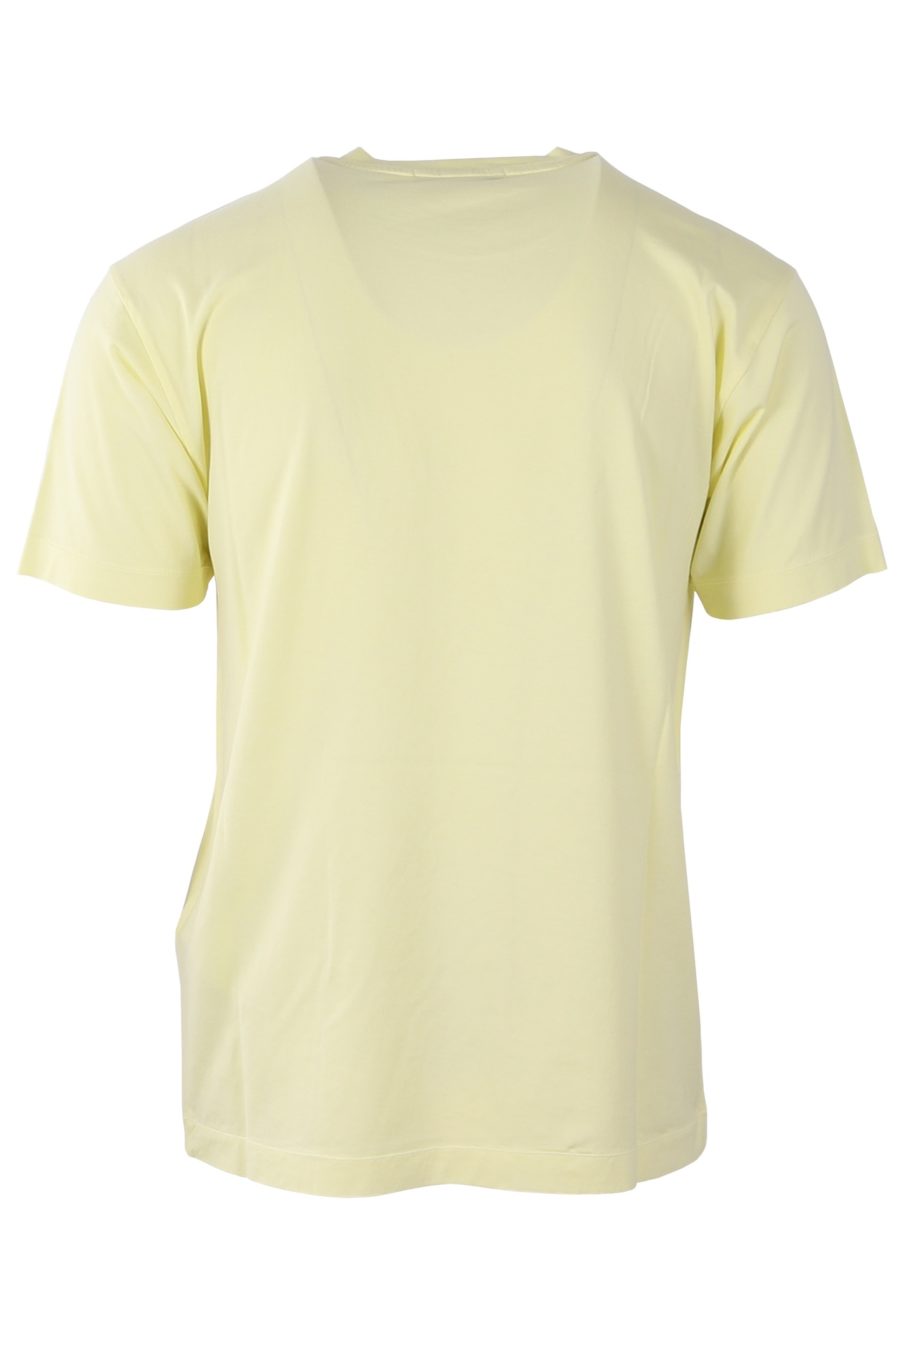 Camiseta Stone Island amarilla con parche - c783ed4e481008e690ff14a1356bb7940f6fa864